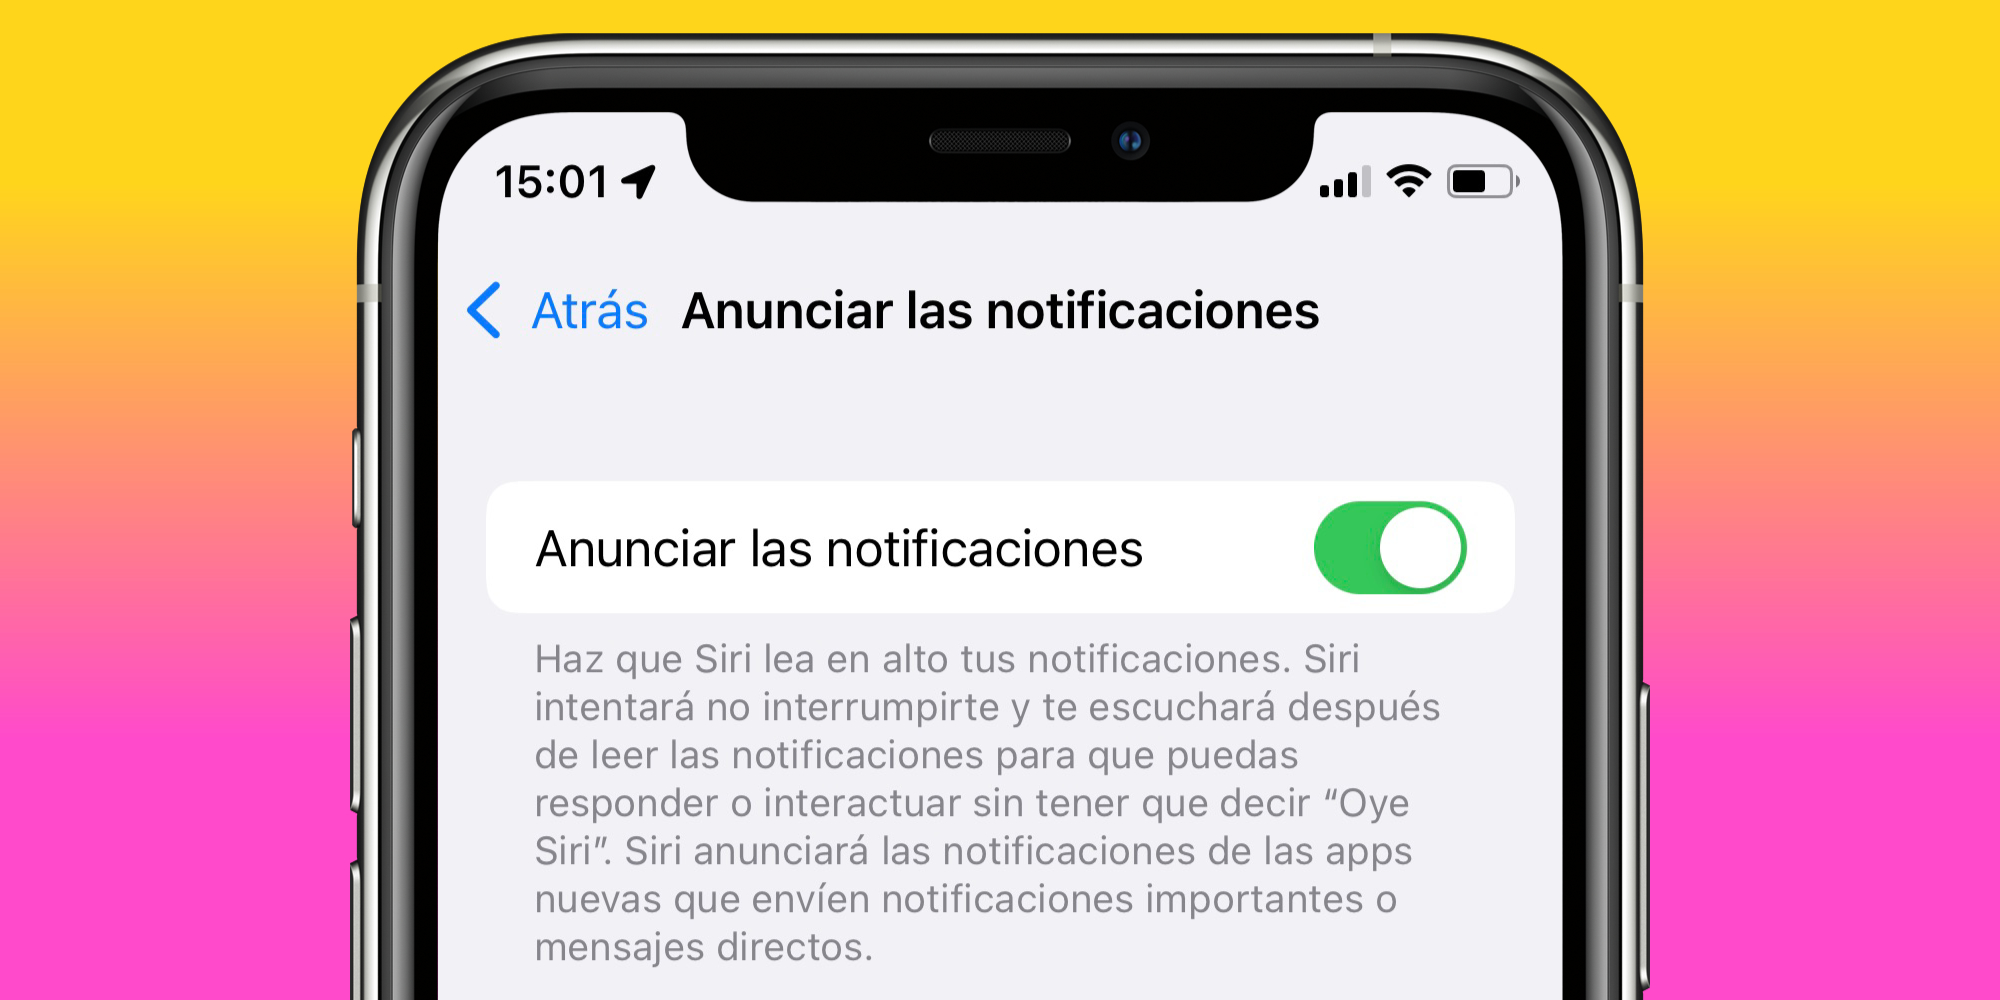 Qué es y cómo utilizar la función de anunciar notificaciones en nuestro iPhone o iPad con iOS 15